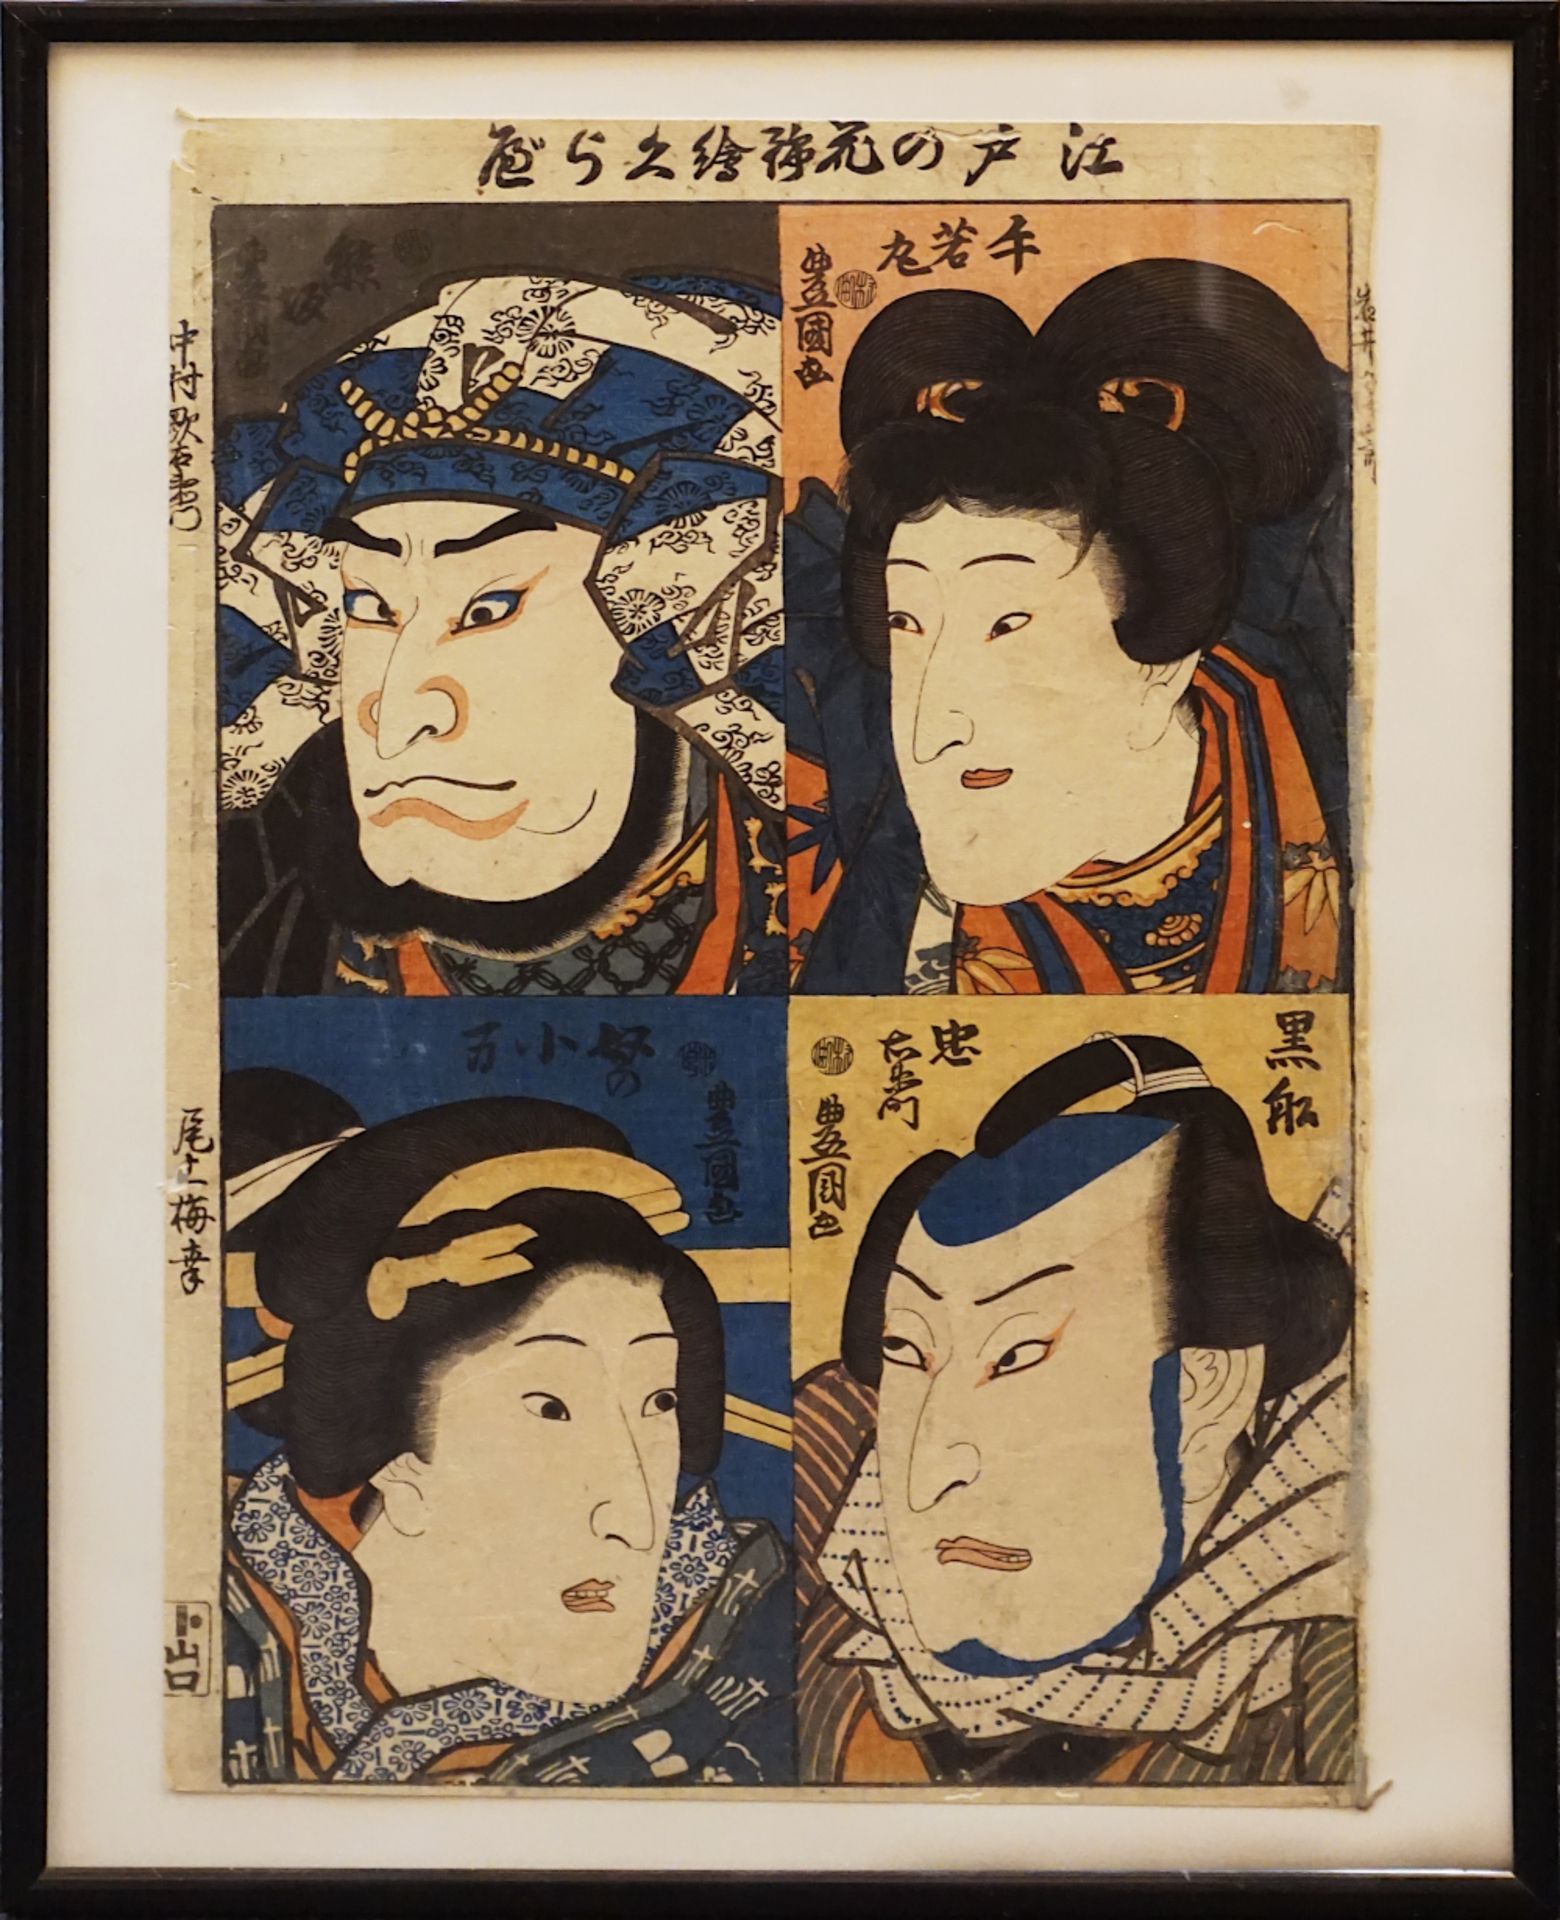 1 Farbholzschnitt "Vier Portraits von berühmten Kabuki-Charakteren des Edo" im Bild bez. Kunisada/To - Image 2 of 2